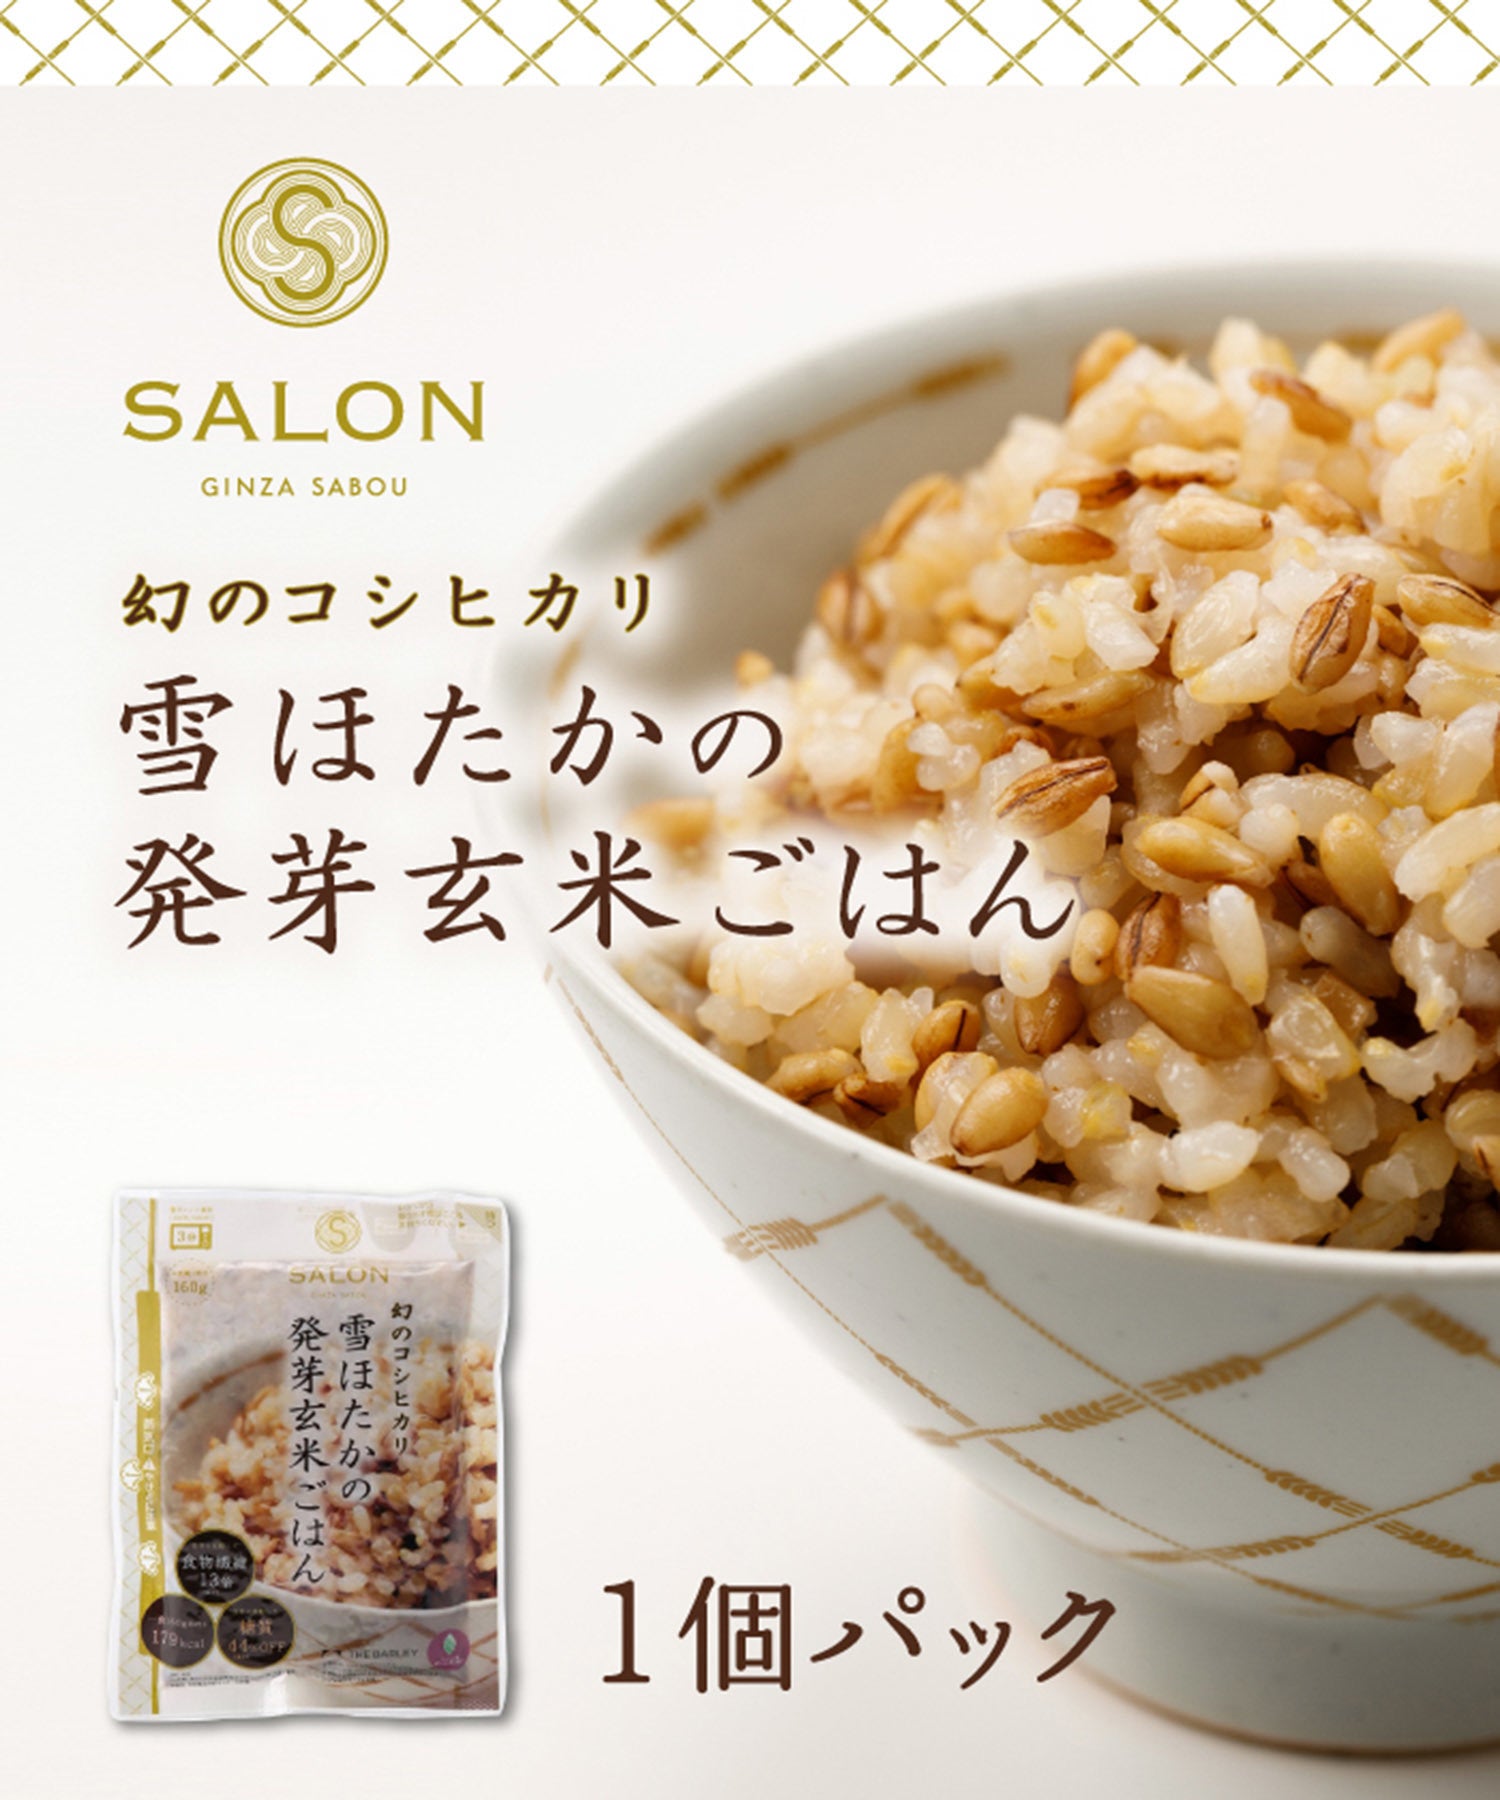 SALON GINZA SABOU(サロンギンザサボウ) / 雪ほたかの発芽玄米ごはん 